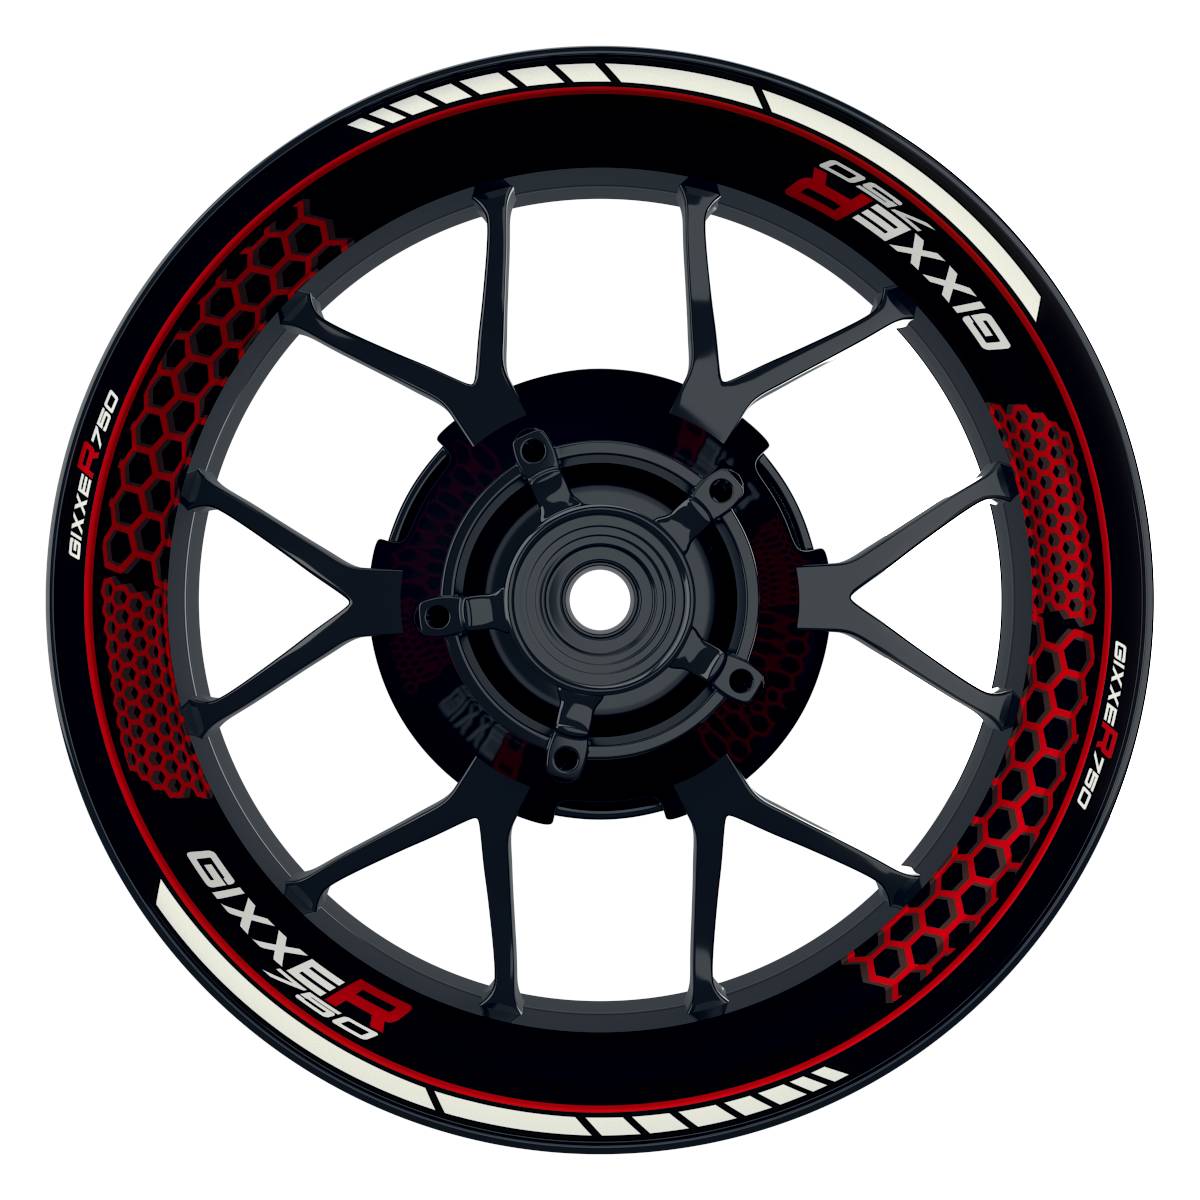 GIXXER750 Hexagon schwarz rot Wheelsticker Felgenaufkleber